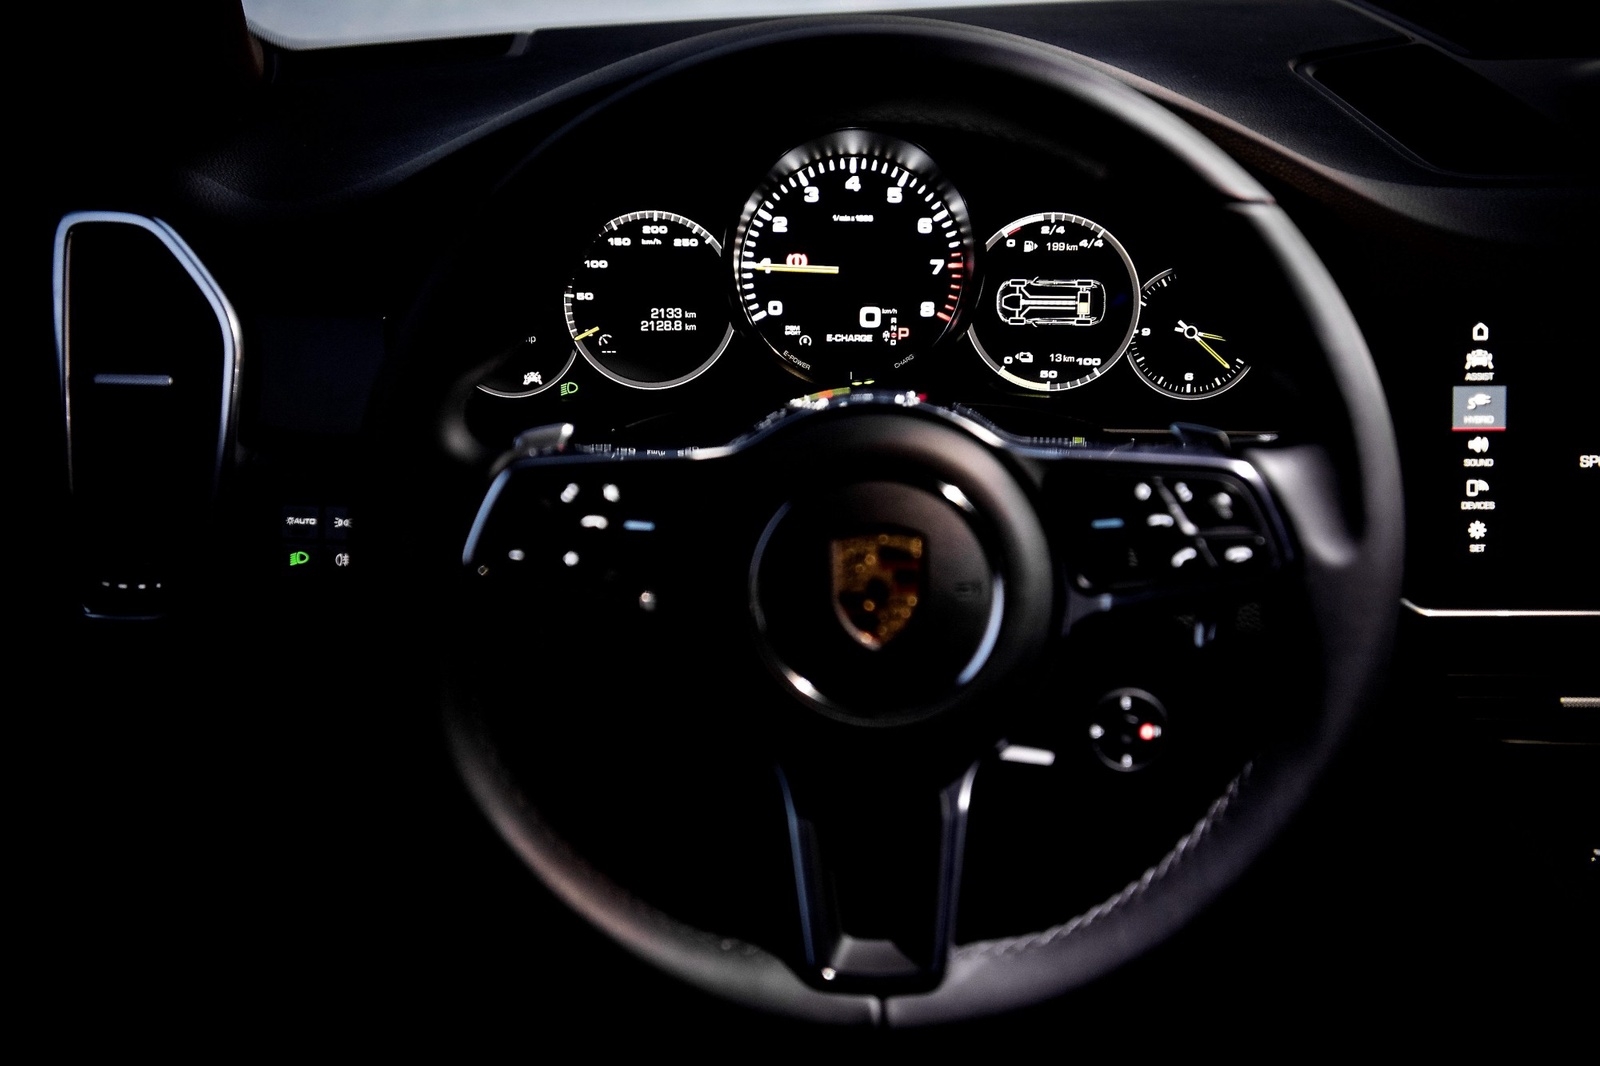 I mitten tronar en helt analog varvräknare, precis som i Porsches sportbilar. Till vänster och höger om den finns digitala skärmar med varierbart innehåll.